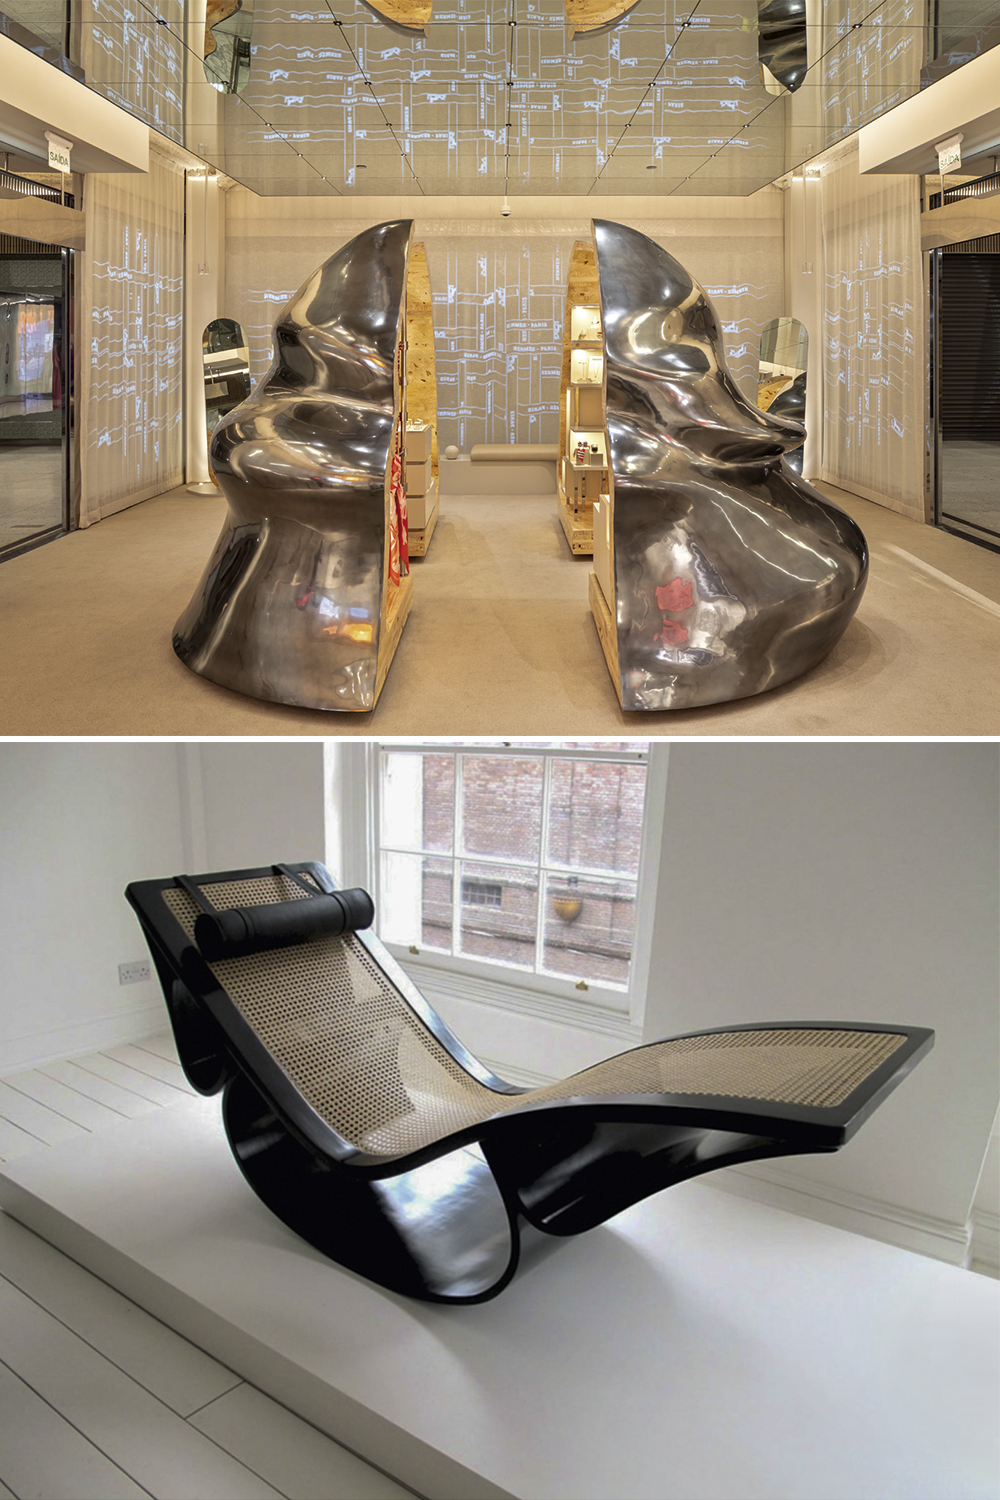 SENSUALIDADE - Espaço da Hermès, em São Paulo, projetado por Guto Requena e a chaise longue de Niemeyer (abaixo): não à linha dura